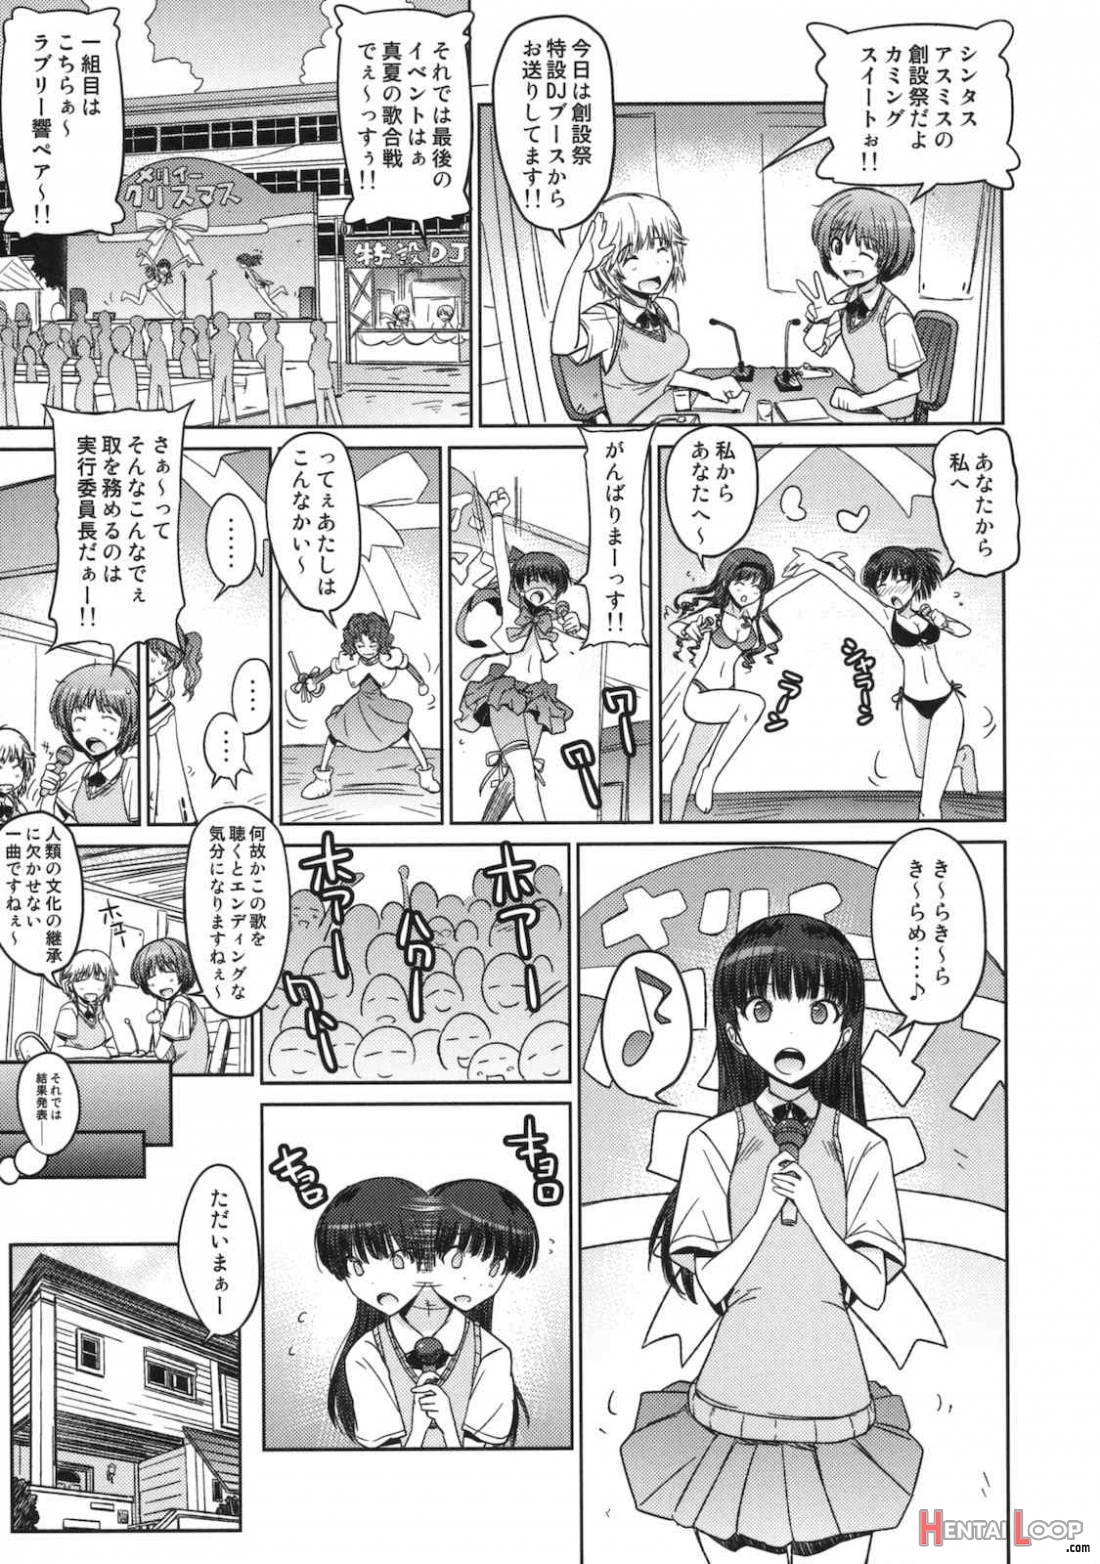 Anata wo Ijimeru 100 no Houhou 2 page 14